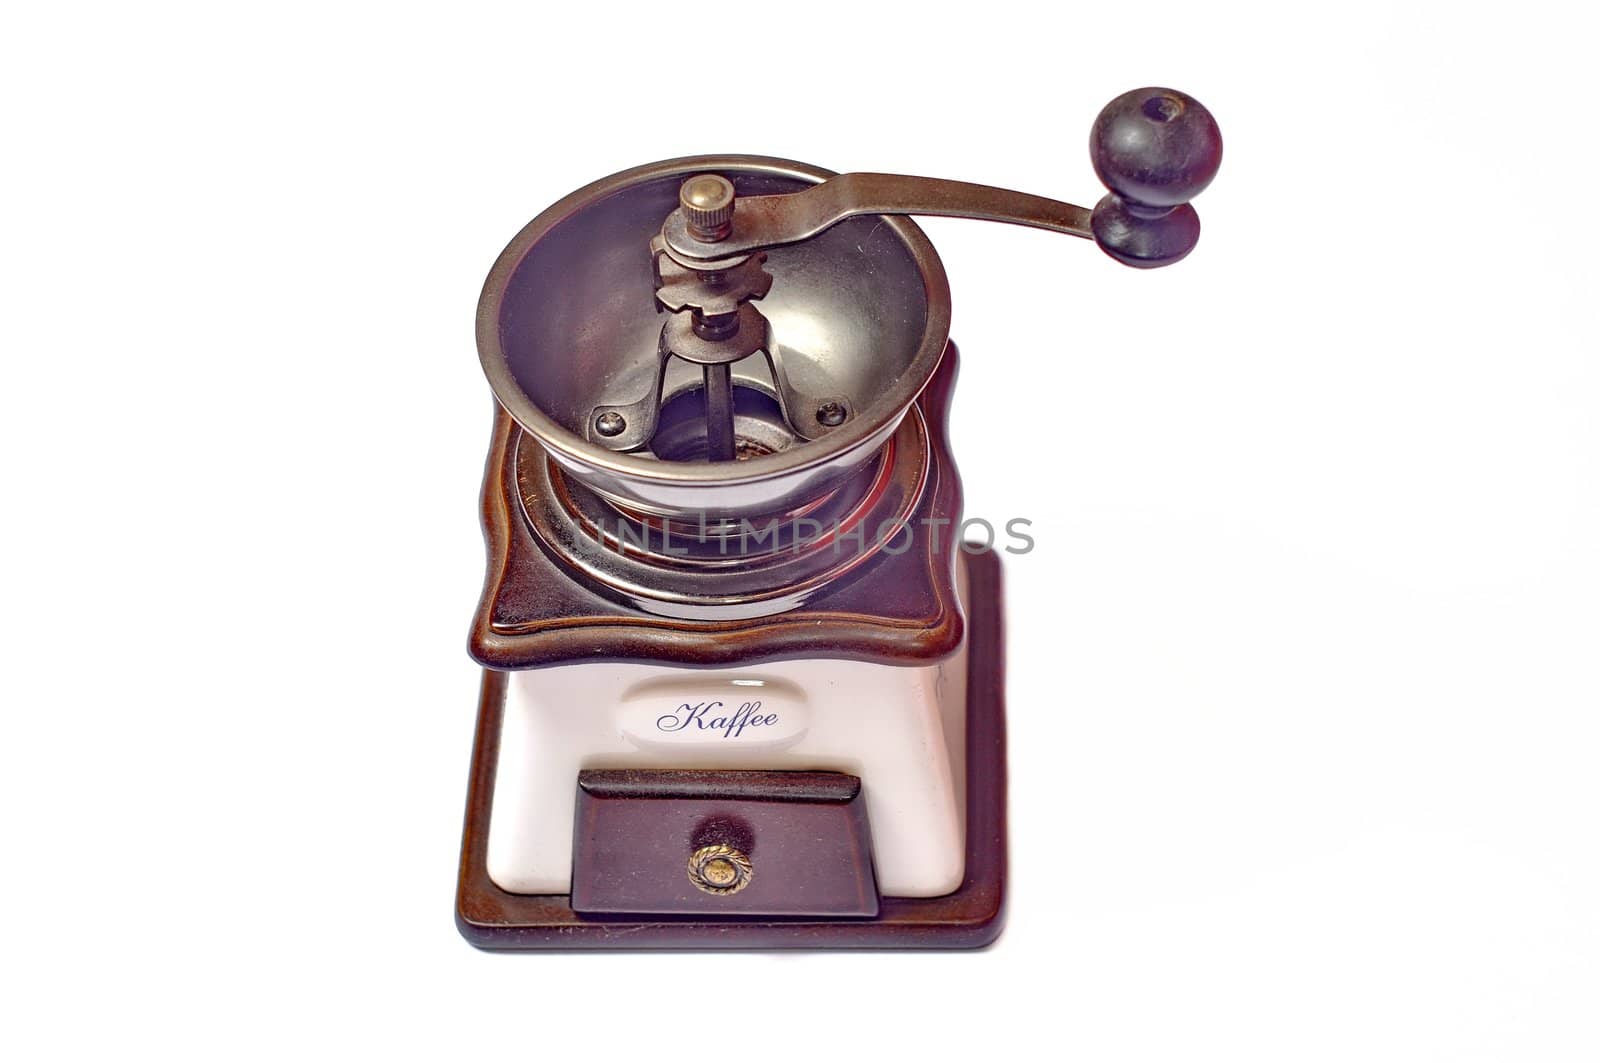 Coffee grinder by anderm